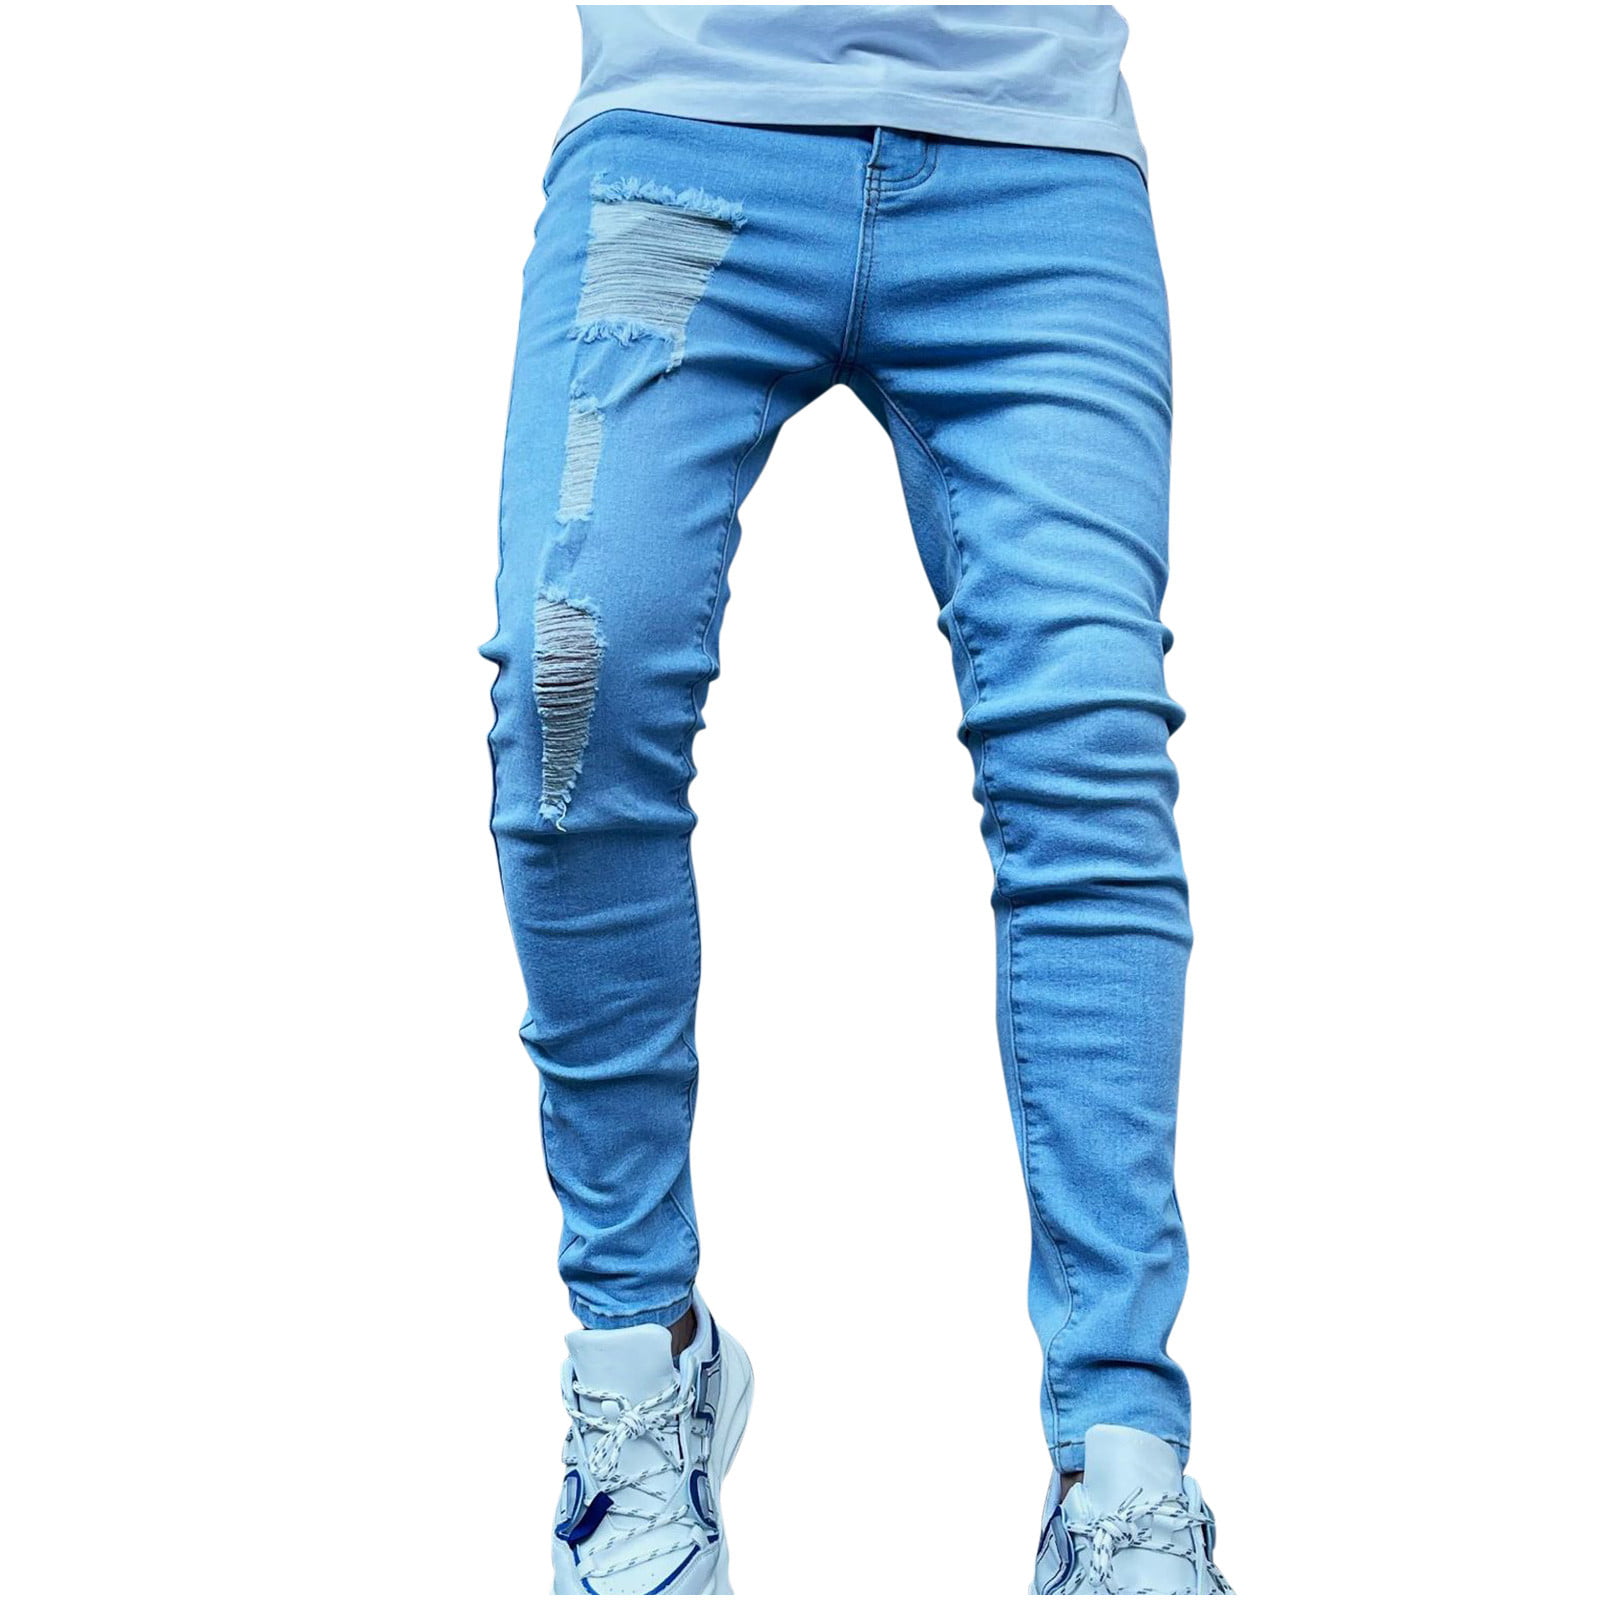 NoLogo White Slim Stretch Jeans  NOLOGOGDDP004  Cilorycom